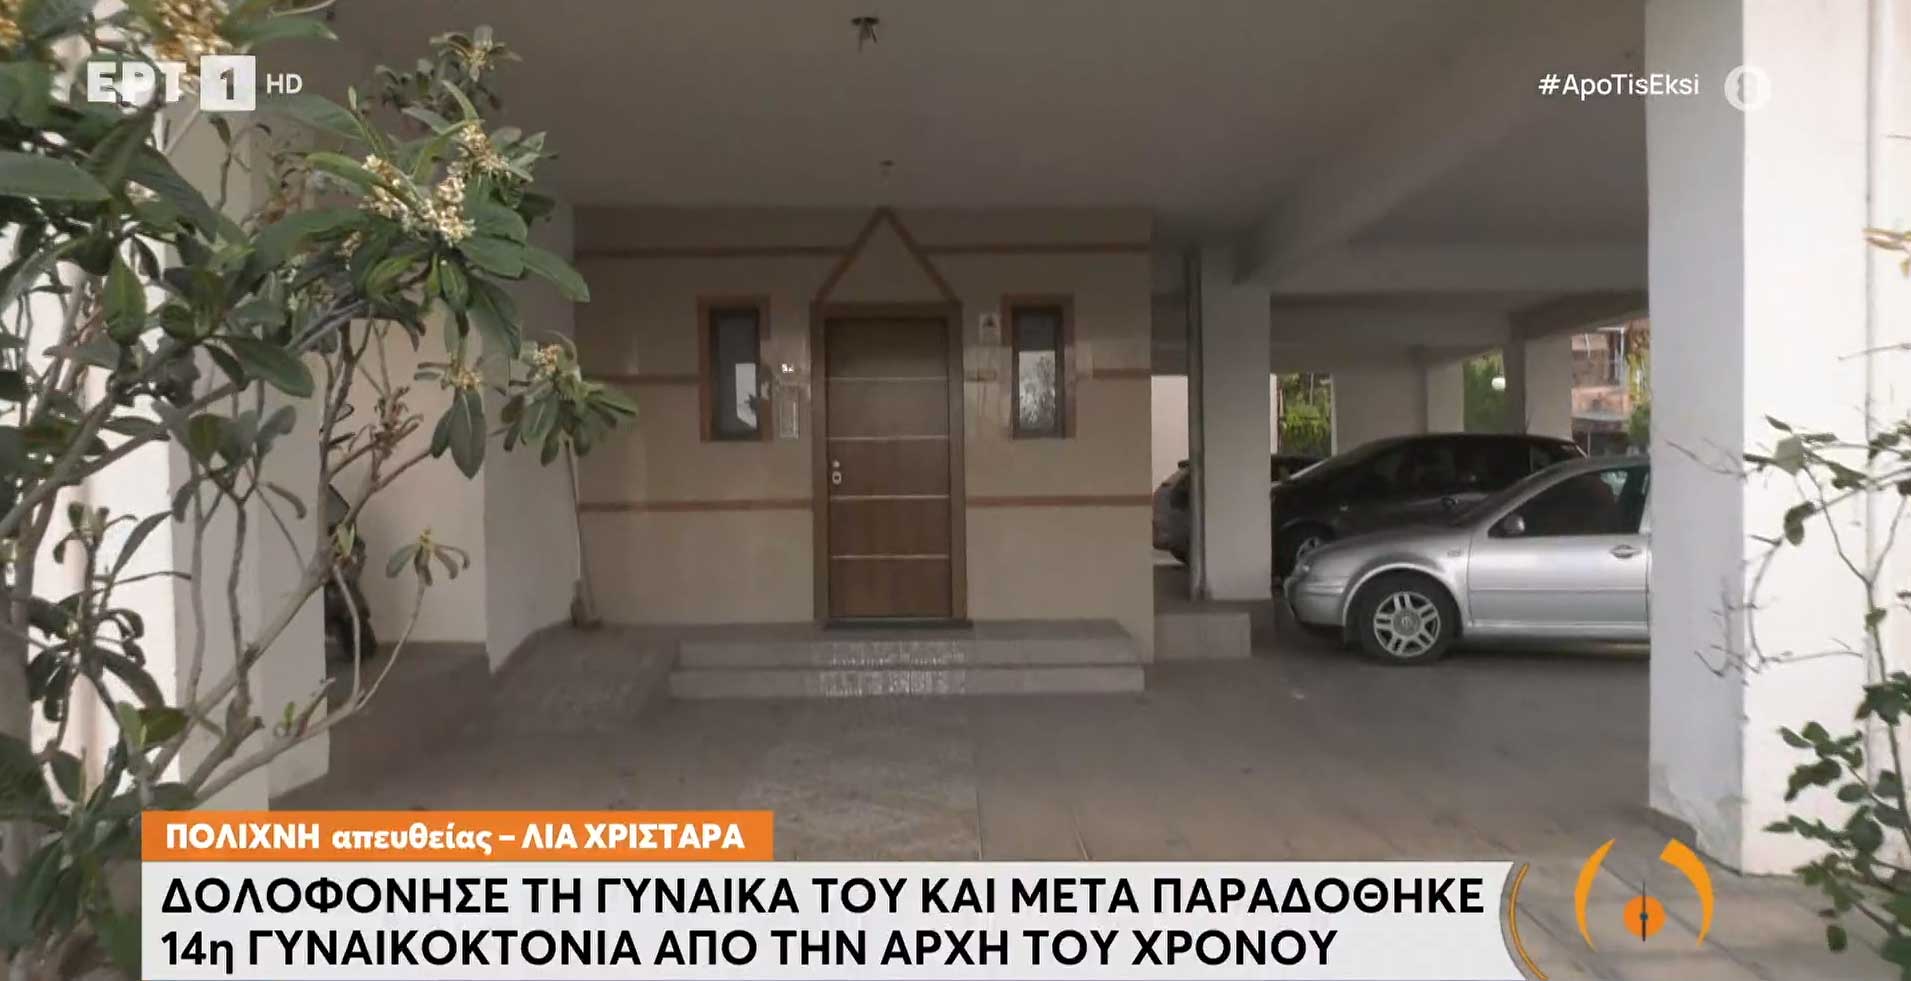 Θεσσαλονίκη: Νέα γυναικοκτονία με θύμα 47χρονη – Παραδόθηκε ο 49χρονος δράστης | ertnews.gr